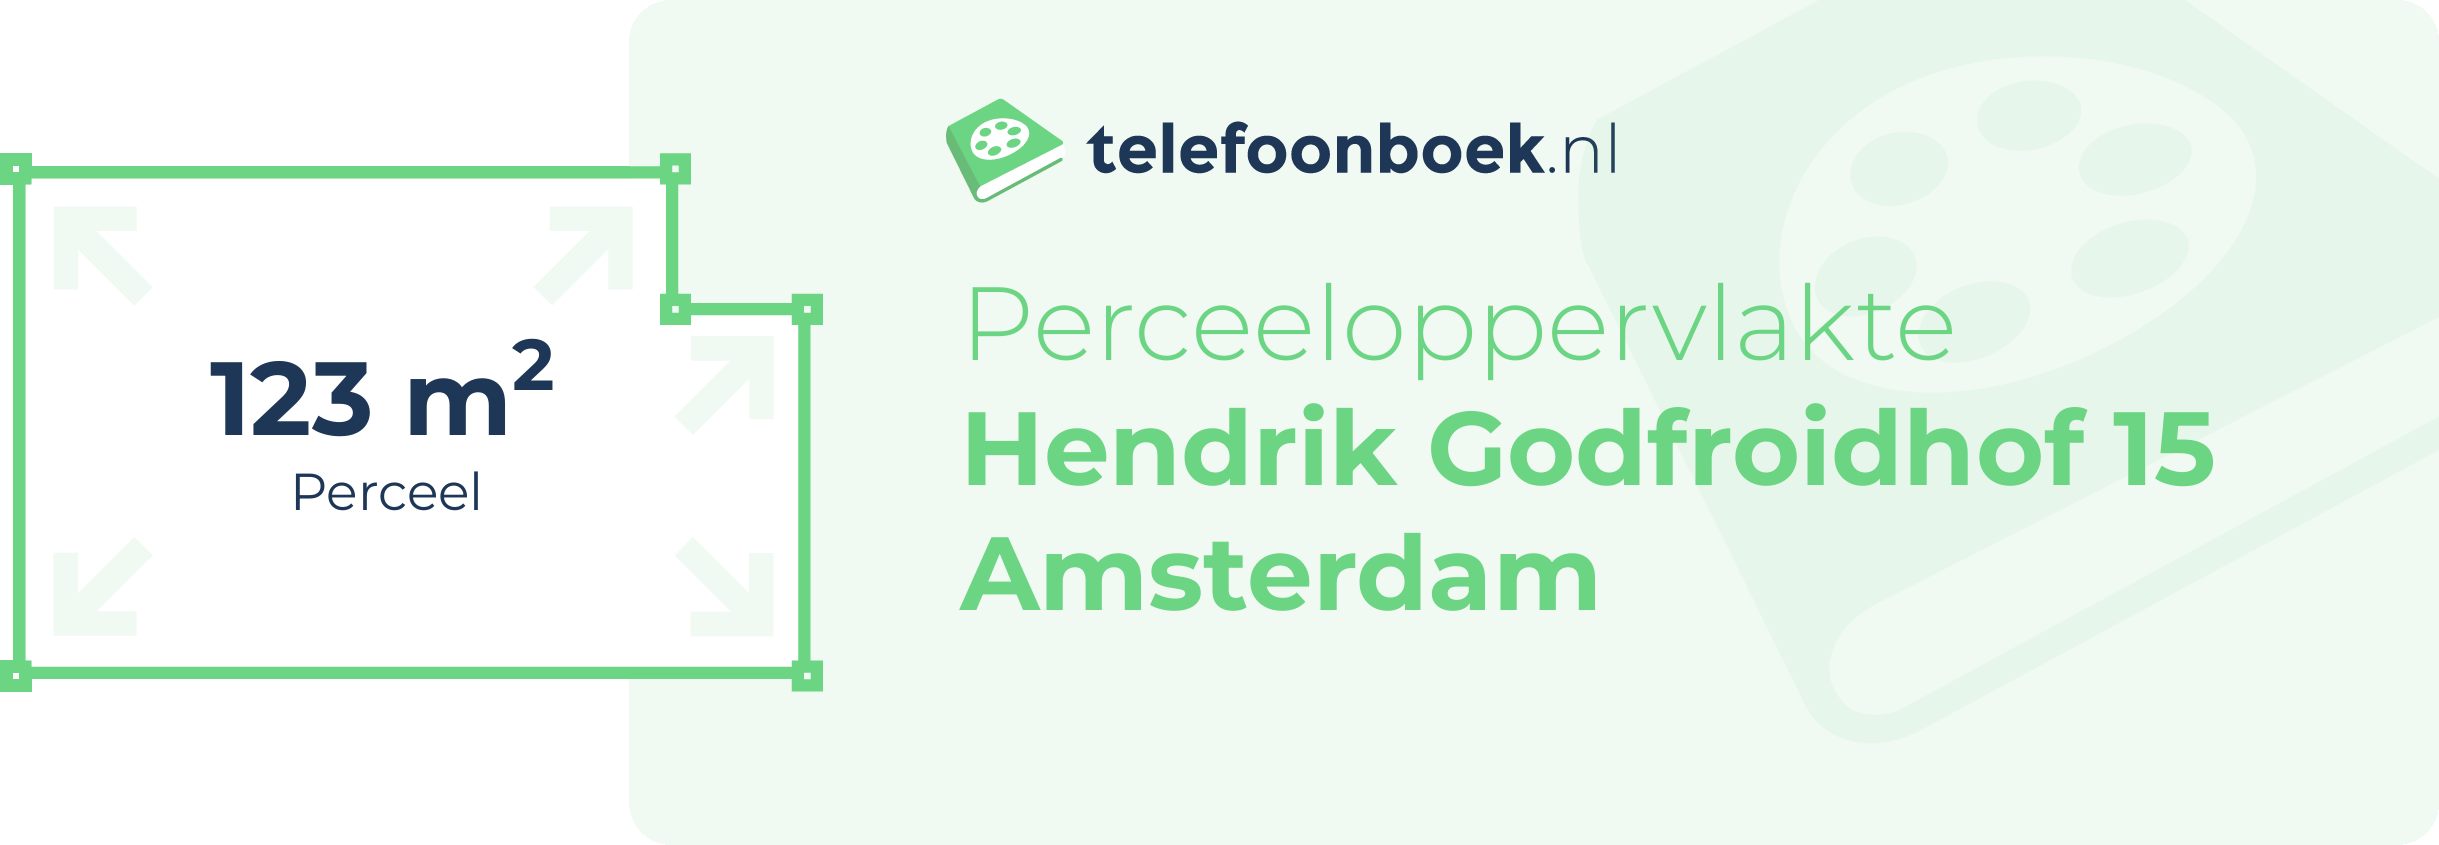 Perceeloppervlakte Hendrik Godfroidhof 15 Amsterdam